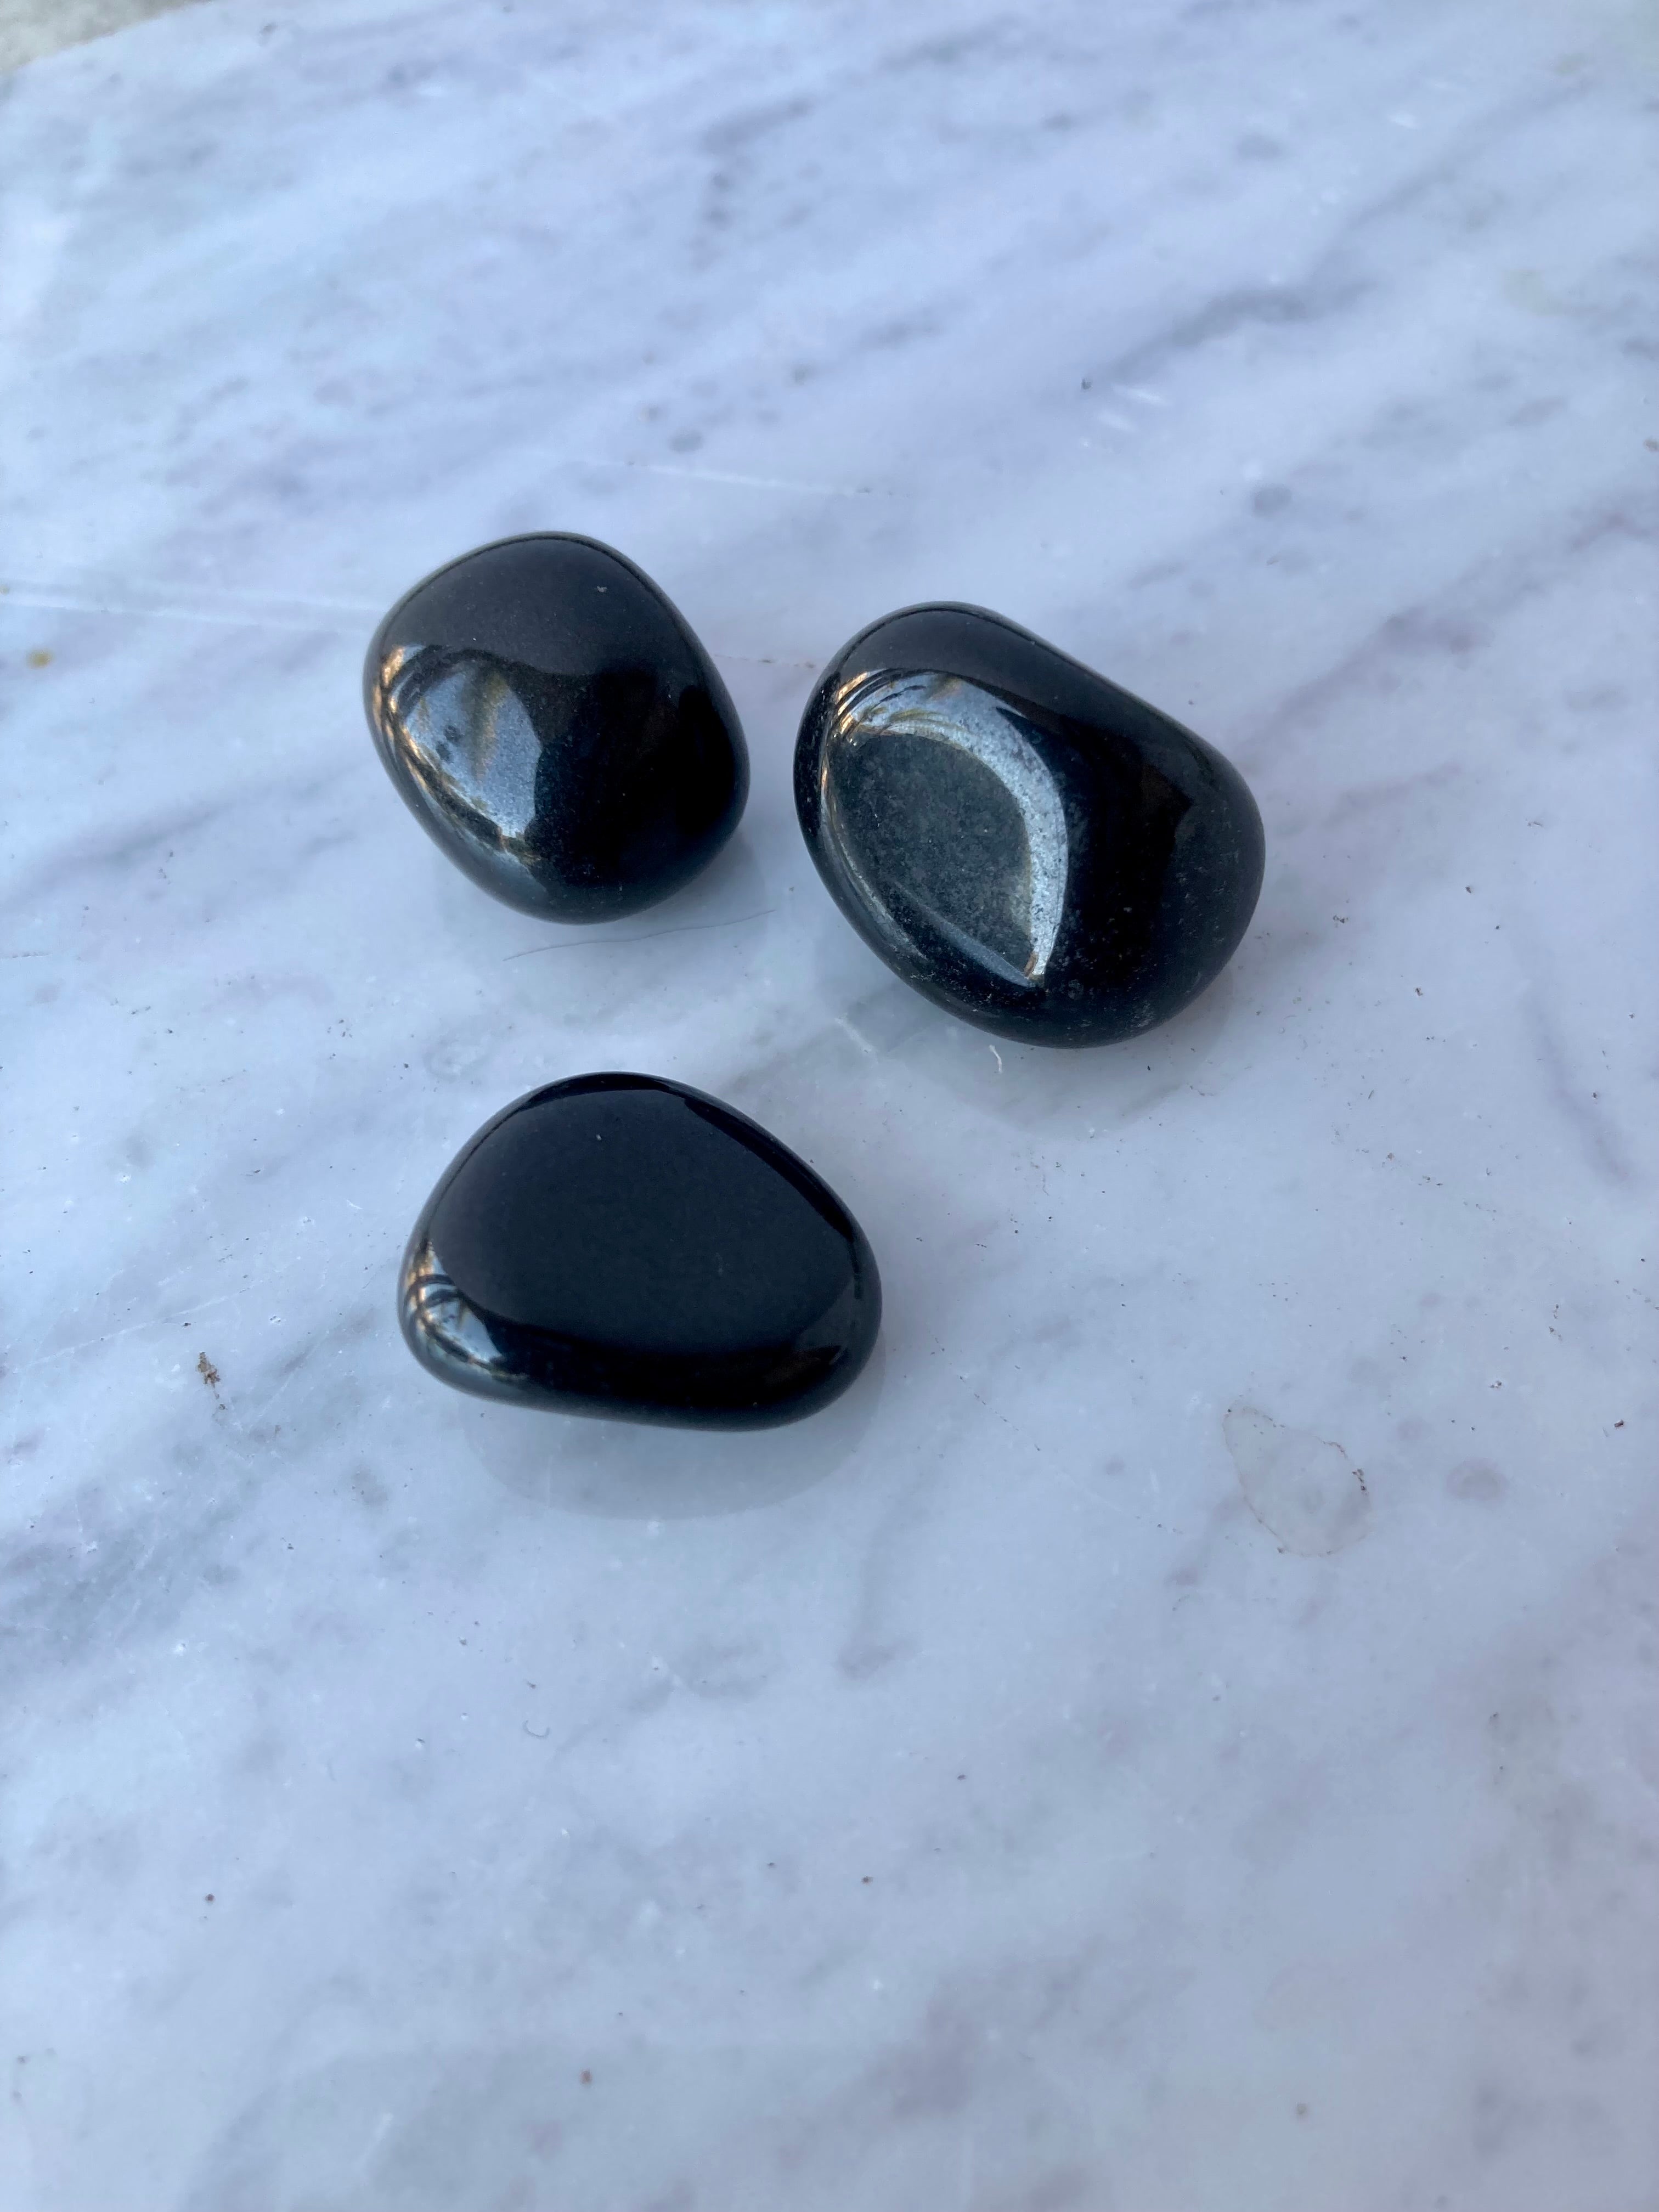 Black Onyx Tumbled Stone - Polished Black Stone - Magic Crystals